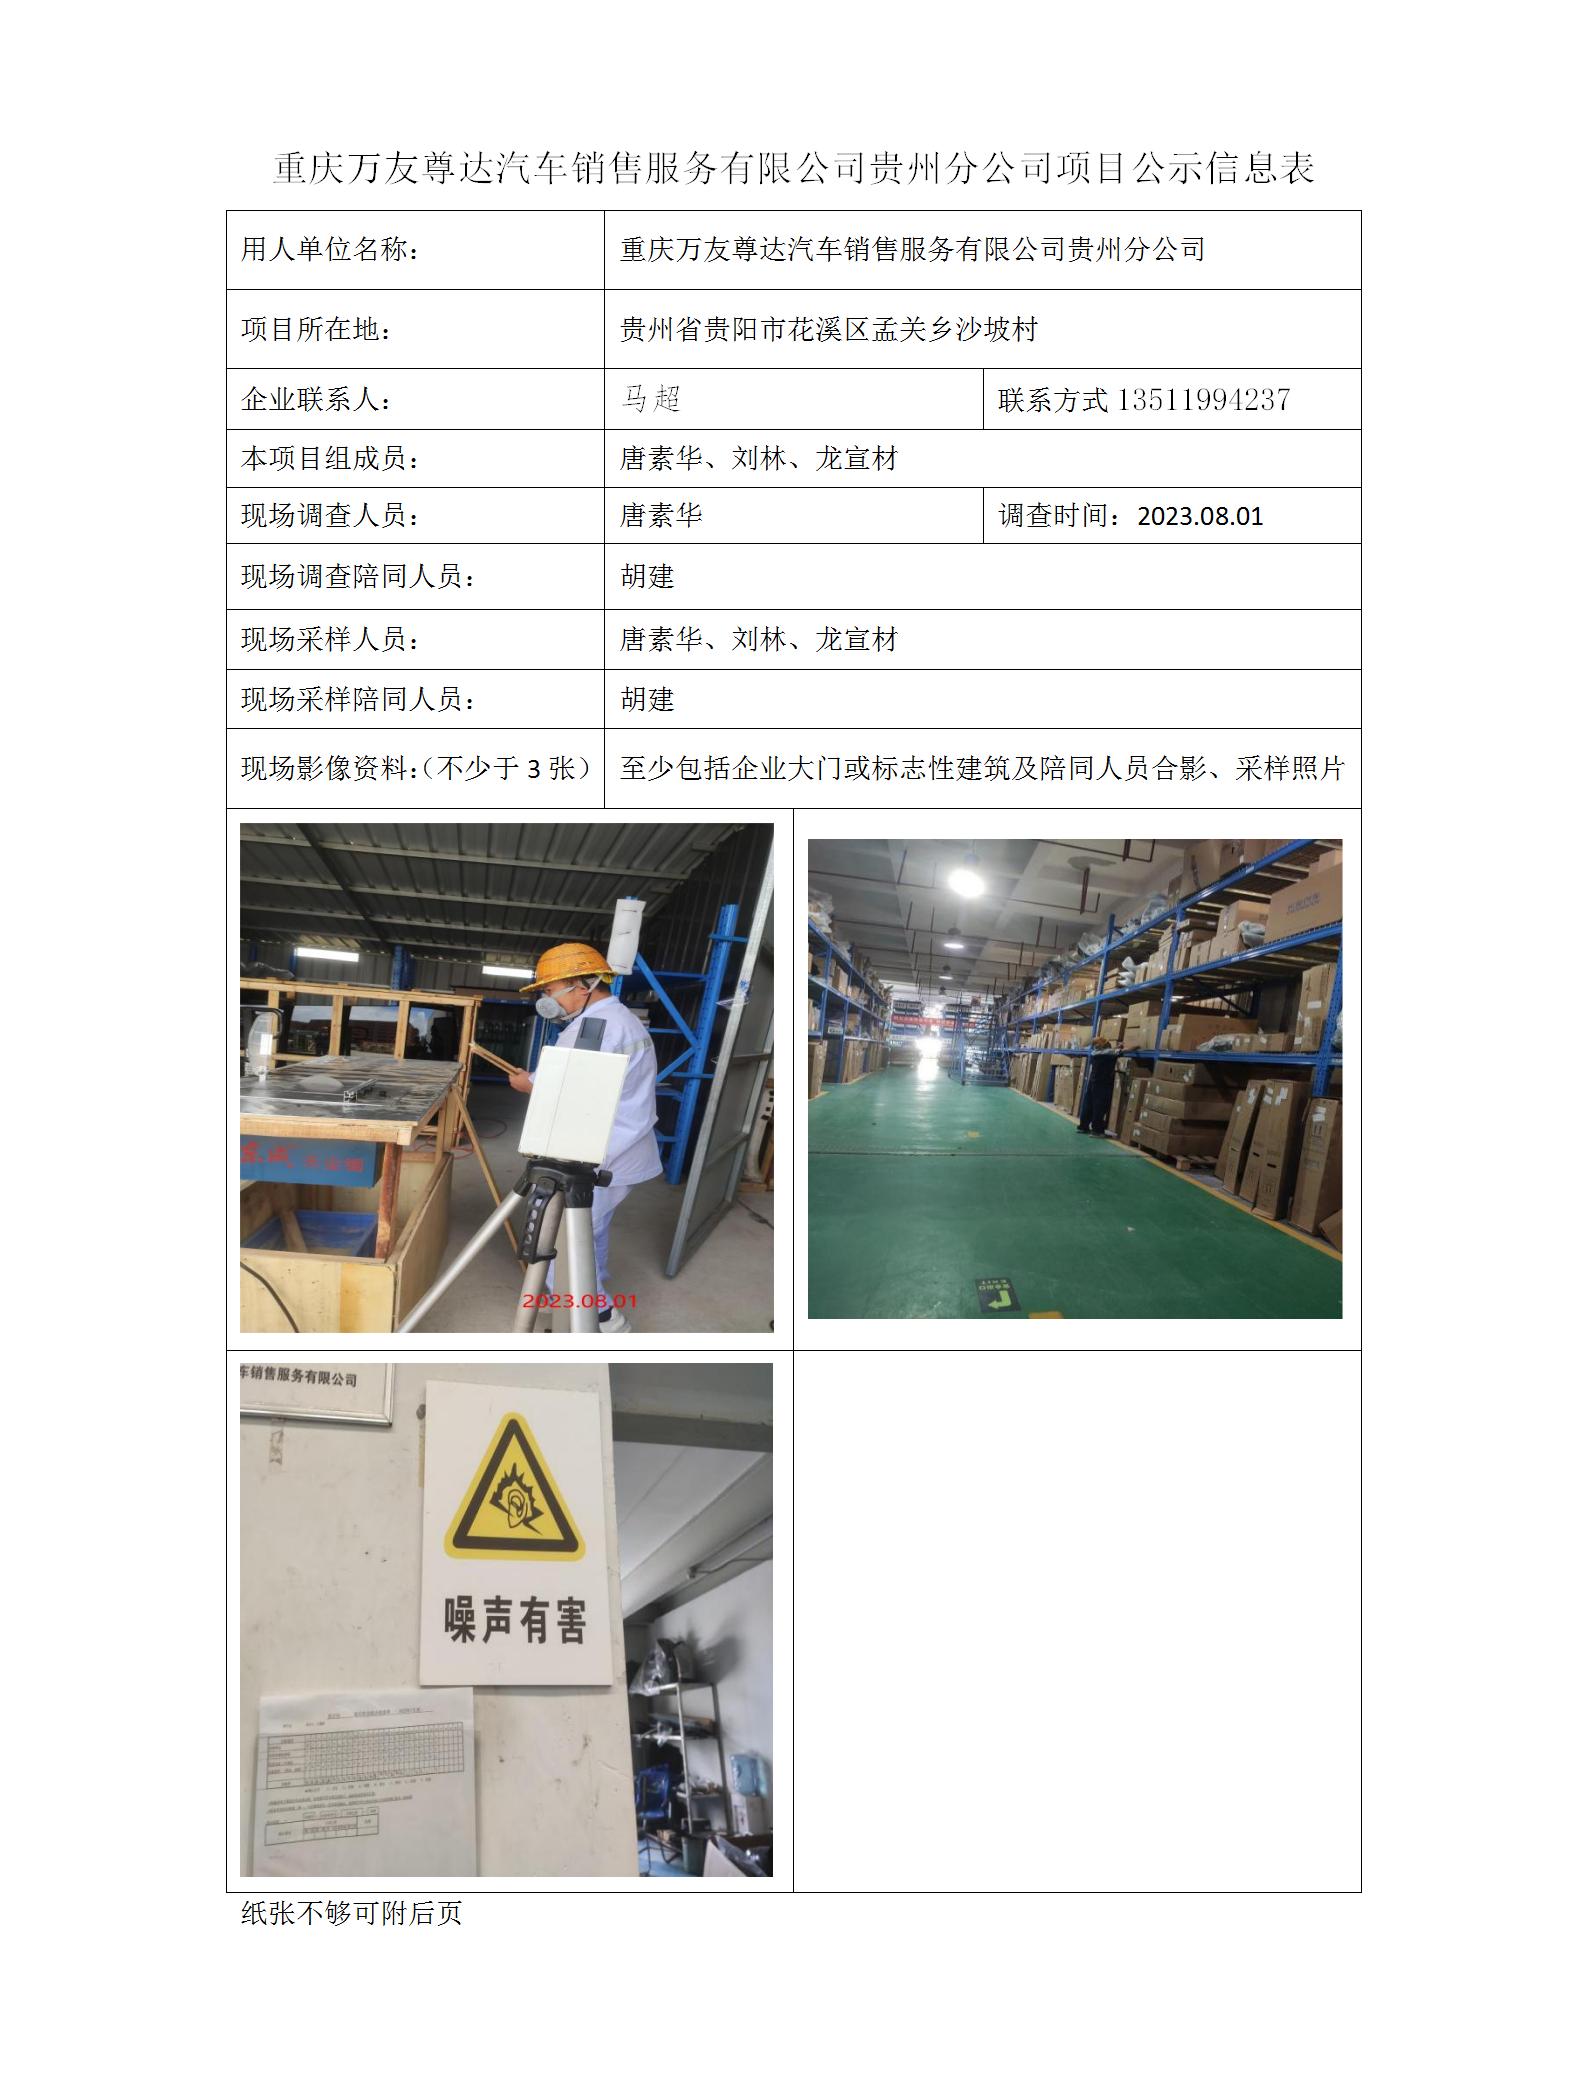 重庆万友尊达汽车销售服务有限公司贵州分公司项目公示信息表_01.jpg